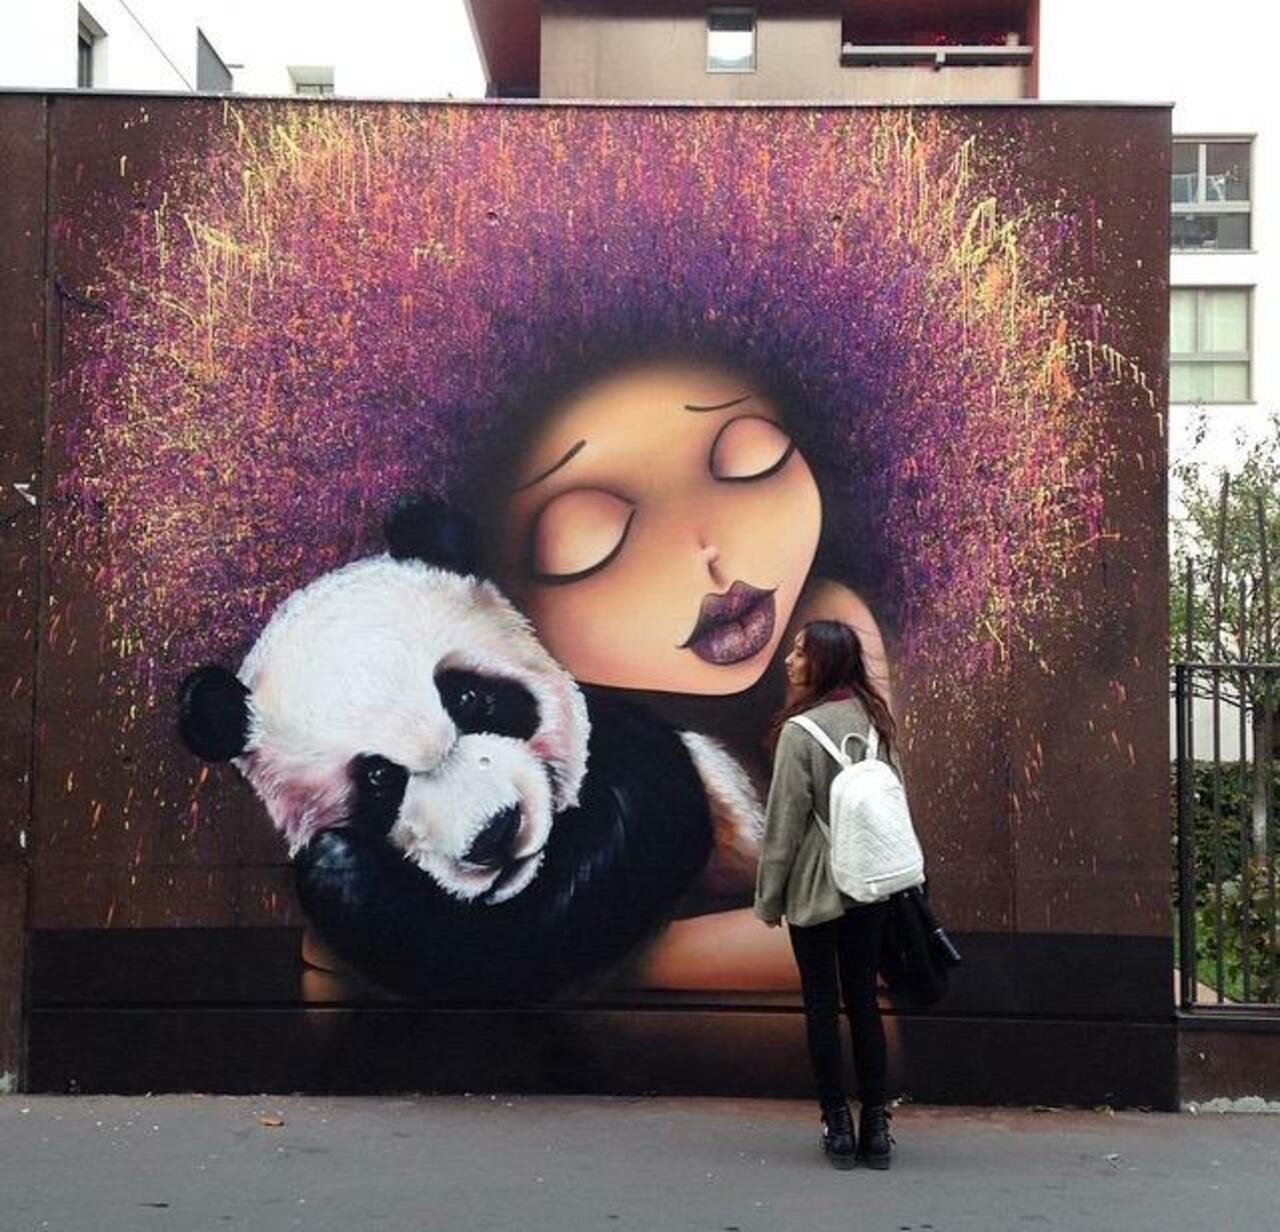 Street Art by VinieGraffiti in Paris 

#art #graffiti #mural #streetart http://t.co/f5T7SFLmSd